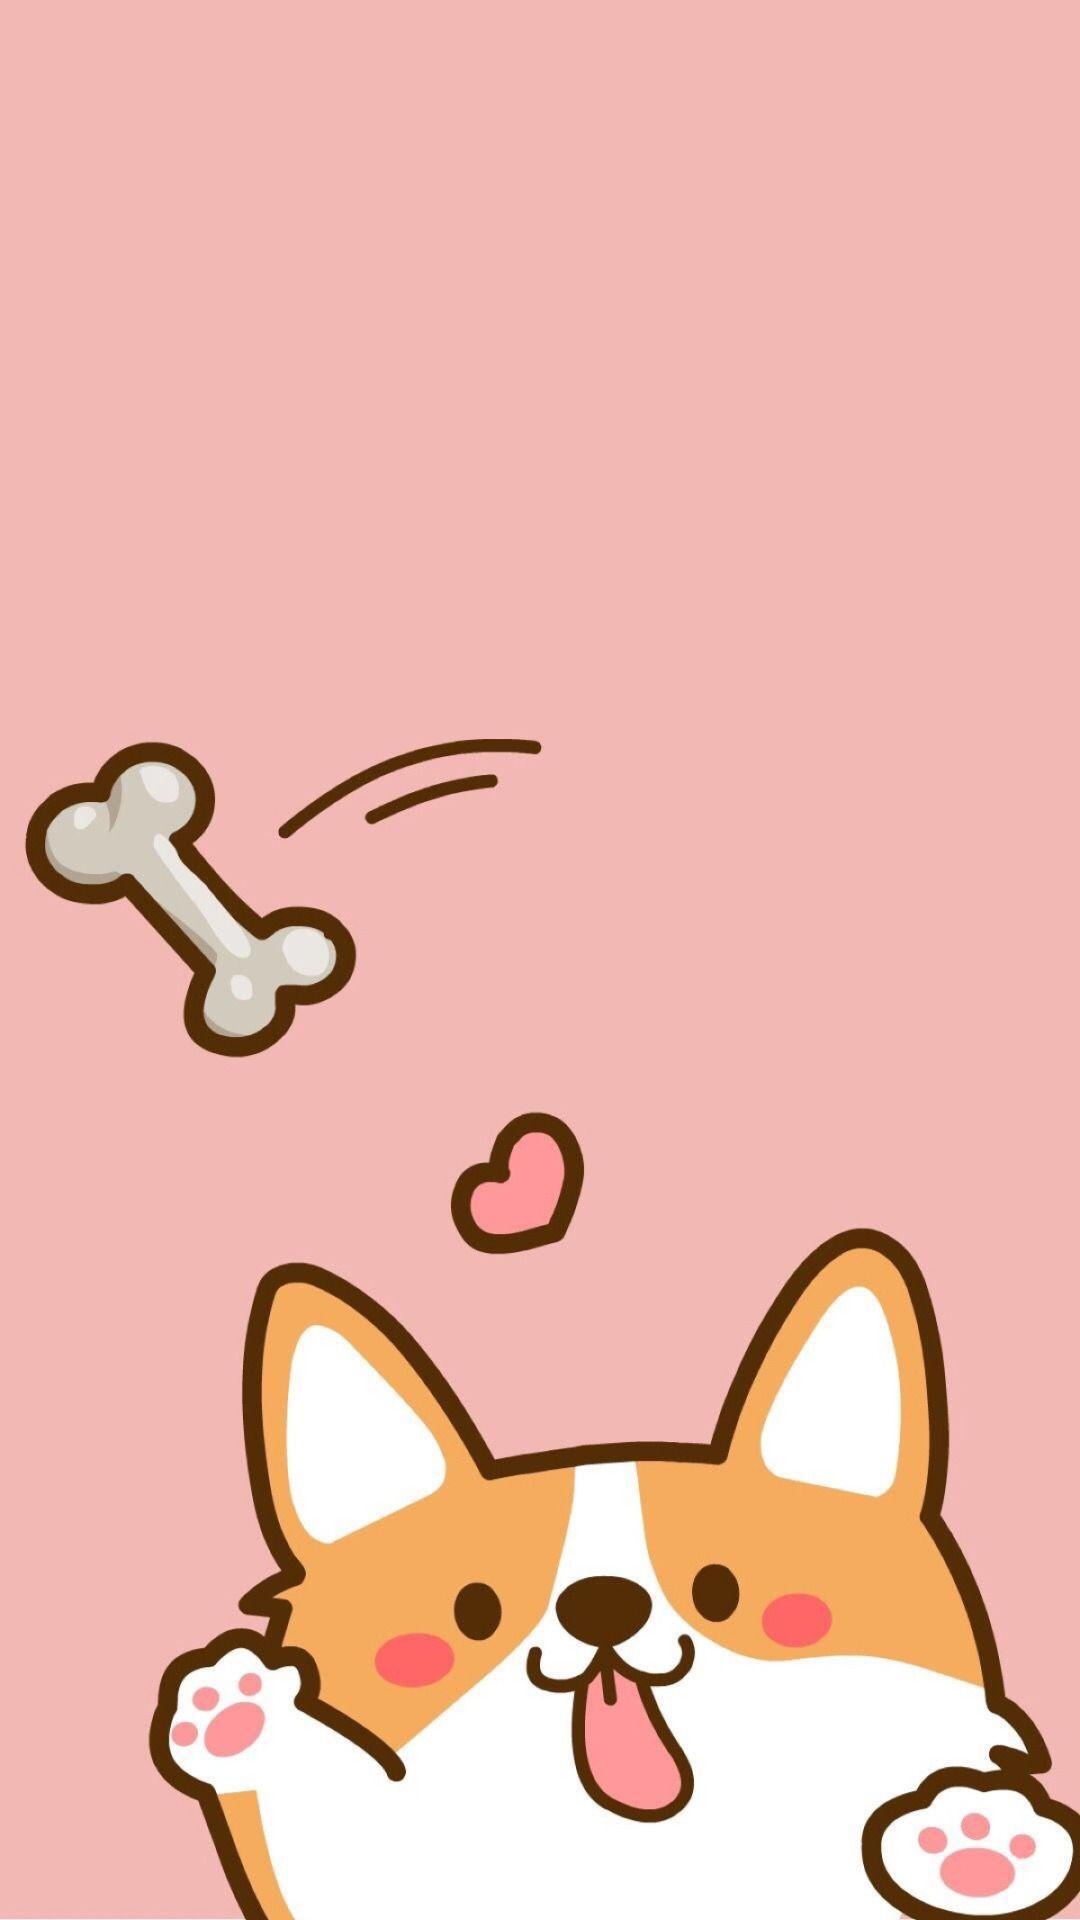 Space Corgi Cute Fluffy, Corgi Dog Breed Astronaut, Manga Anime - Corgi -  Sticker | TeePublic